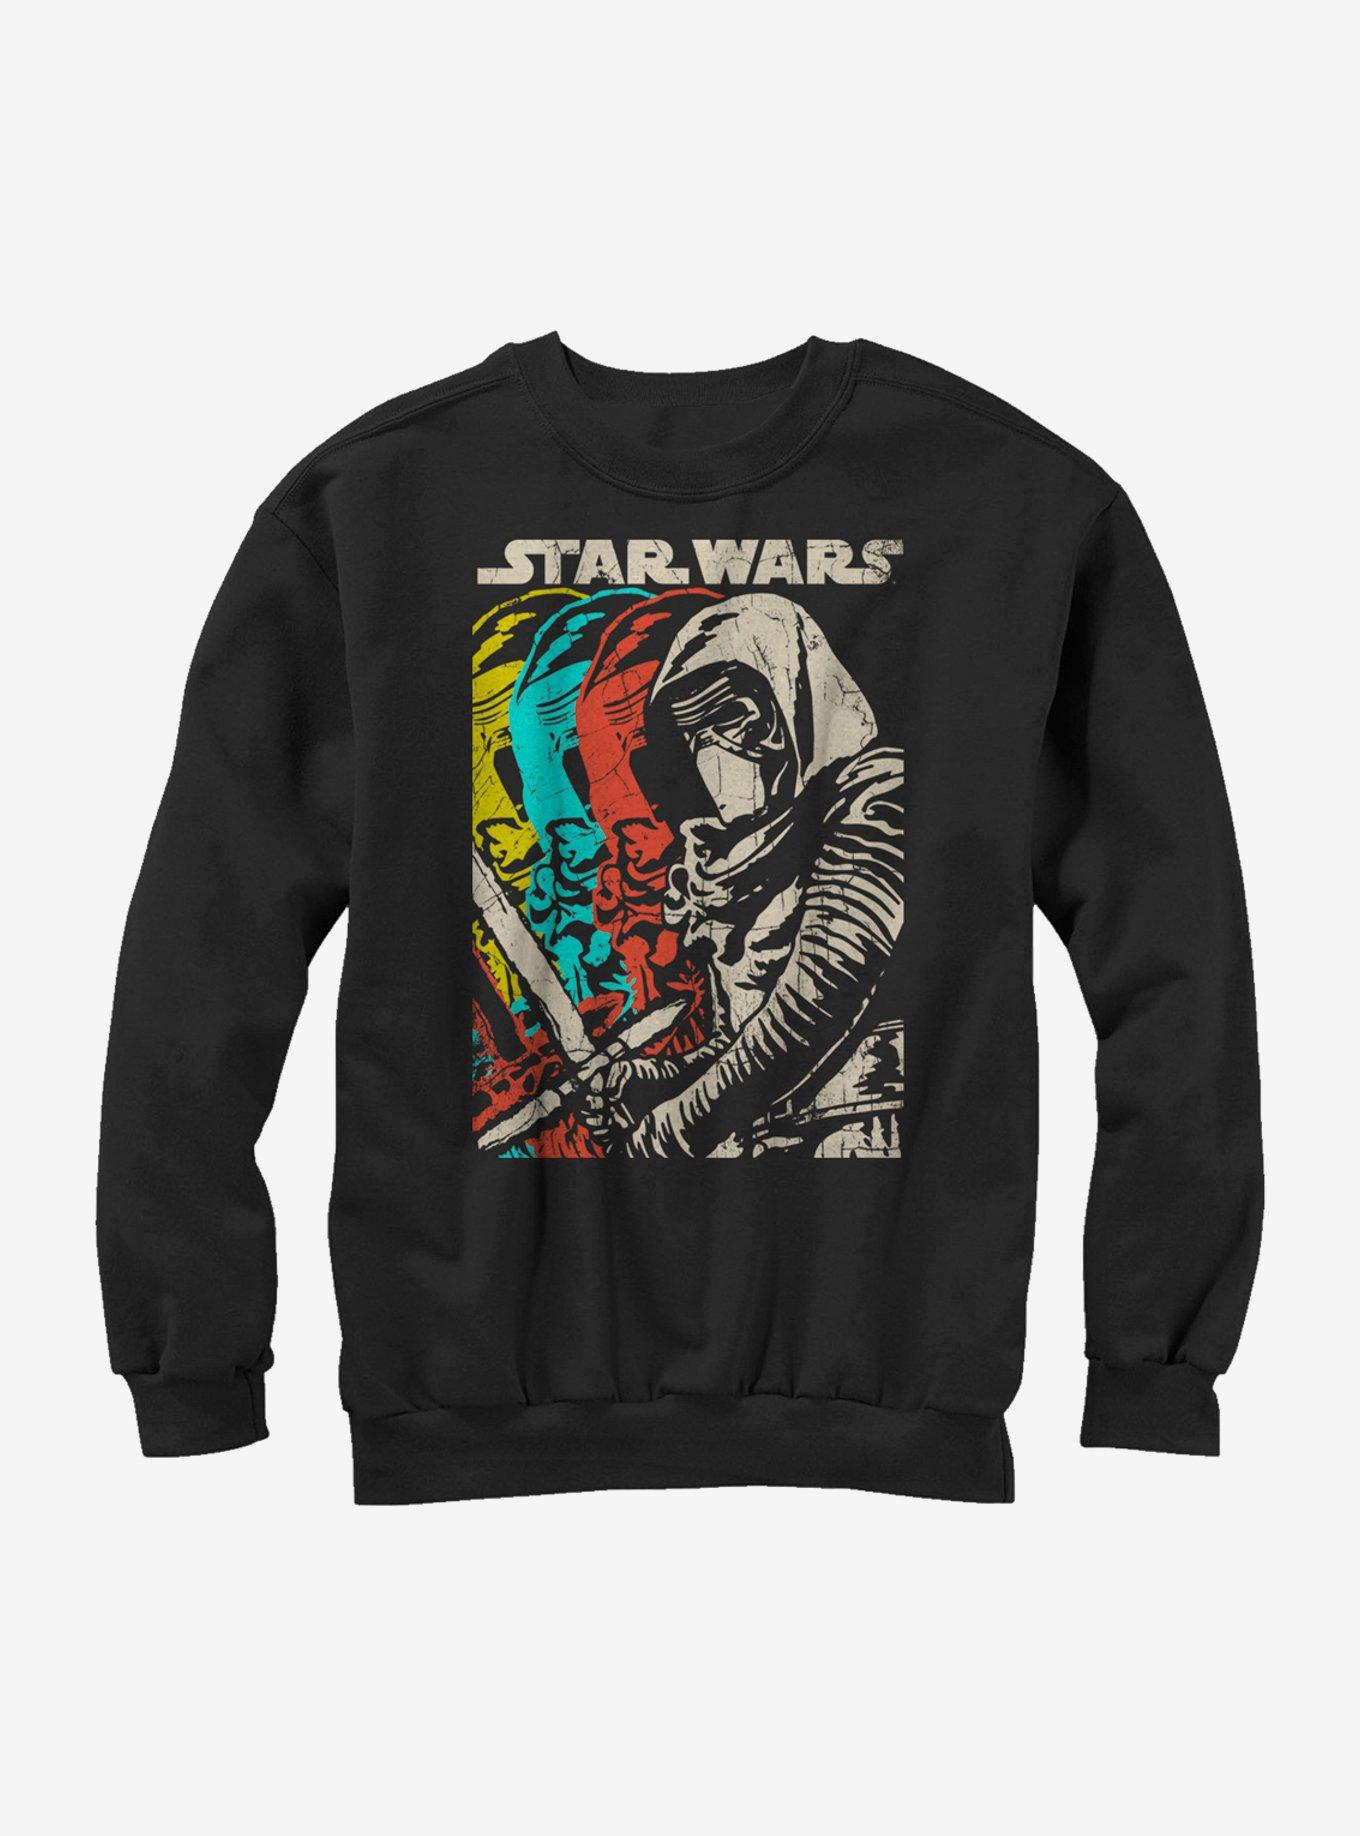 Star Wars Episode VII The Force Awakens Kylo Ren Copies Sweatshirt